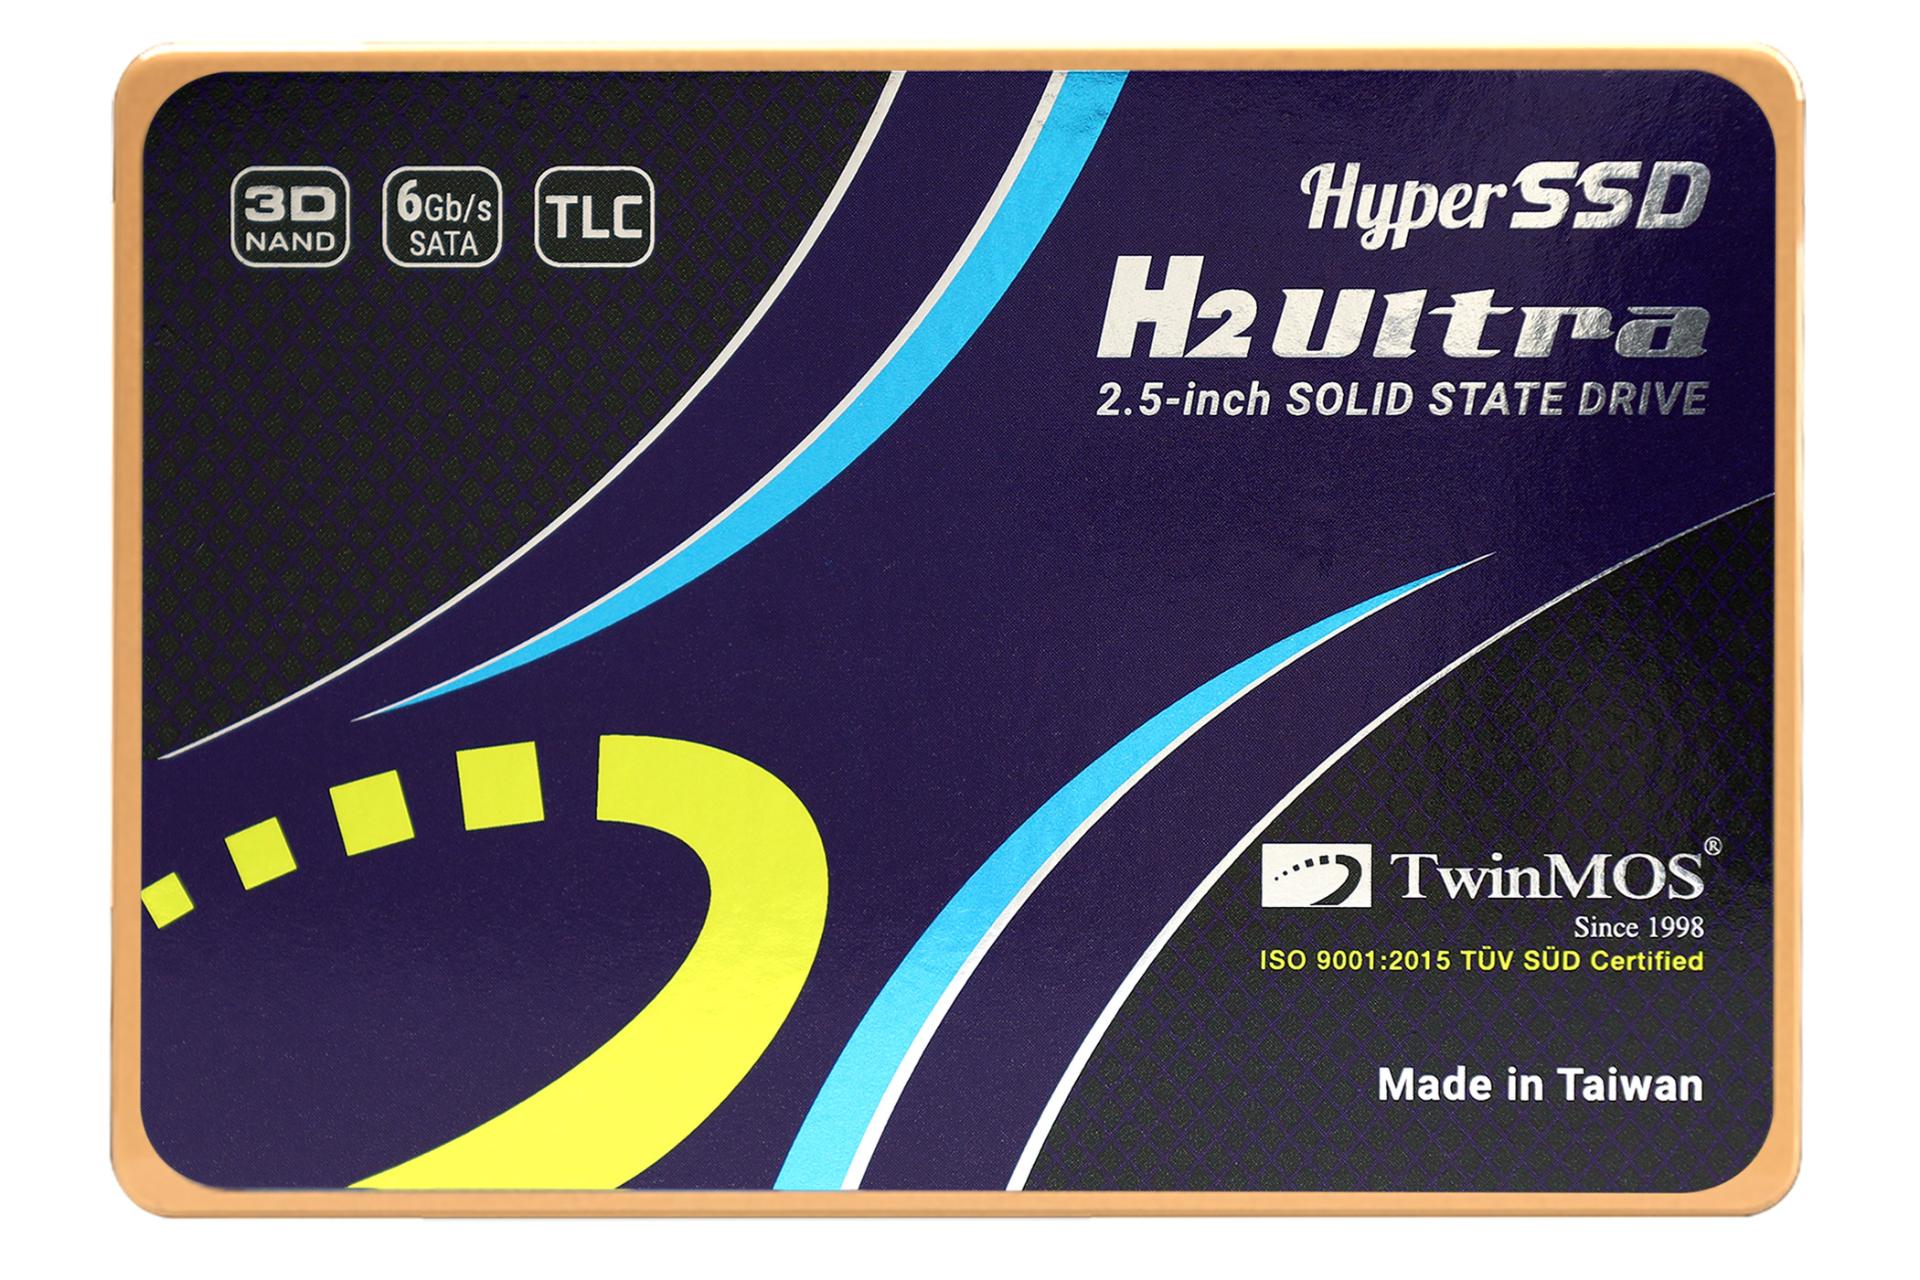 نمای روبرو SSD توین موس Hyper H2 Ultra SATA 2.5 Inch ظرفیت 512 گیگابایت